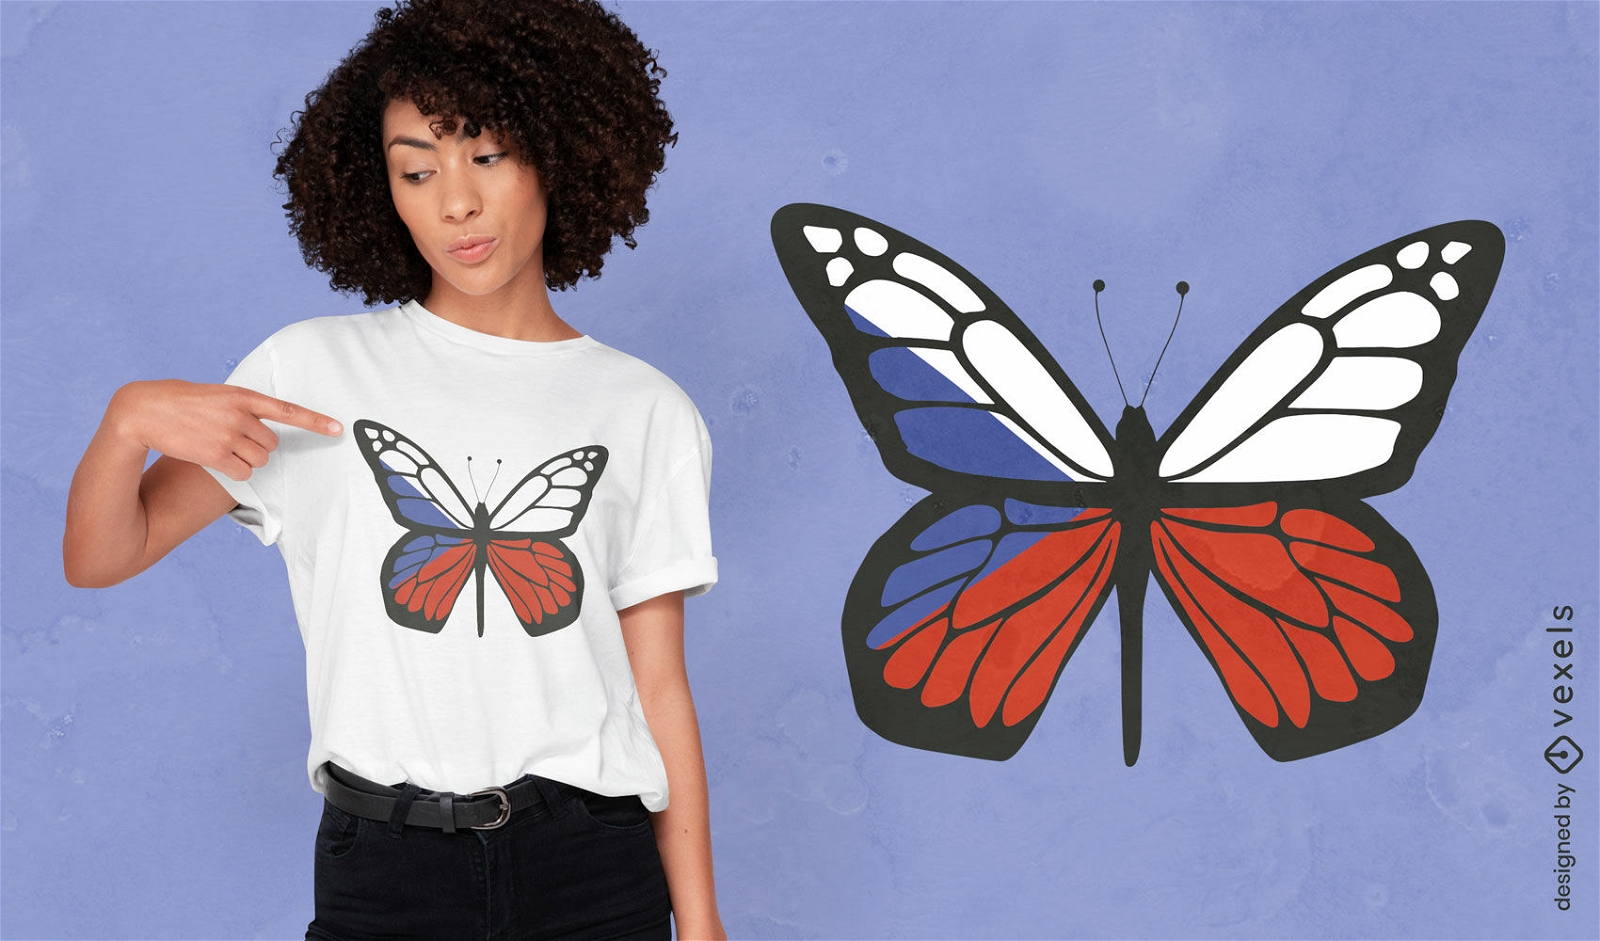 Dise?o de camiseta de mariposa de Rep?blica Checa.